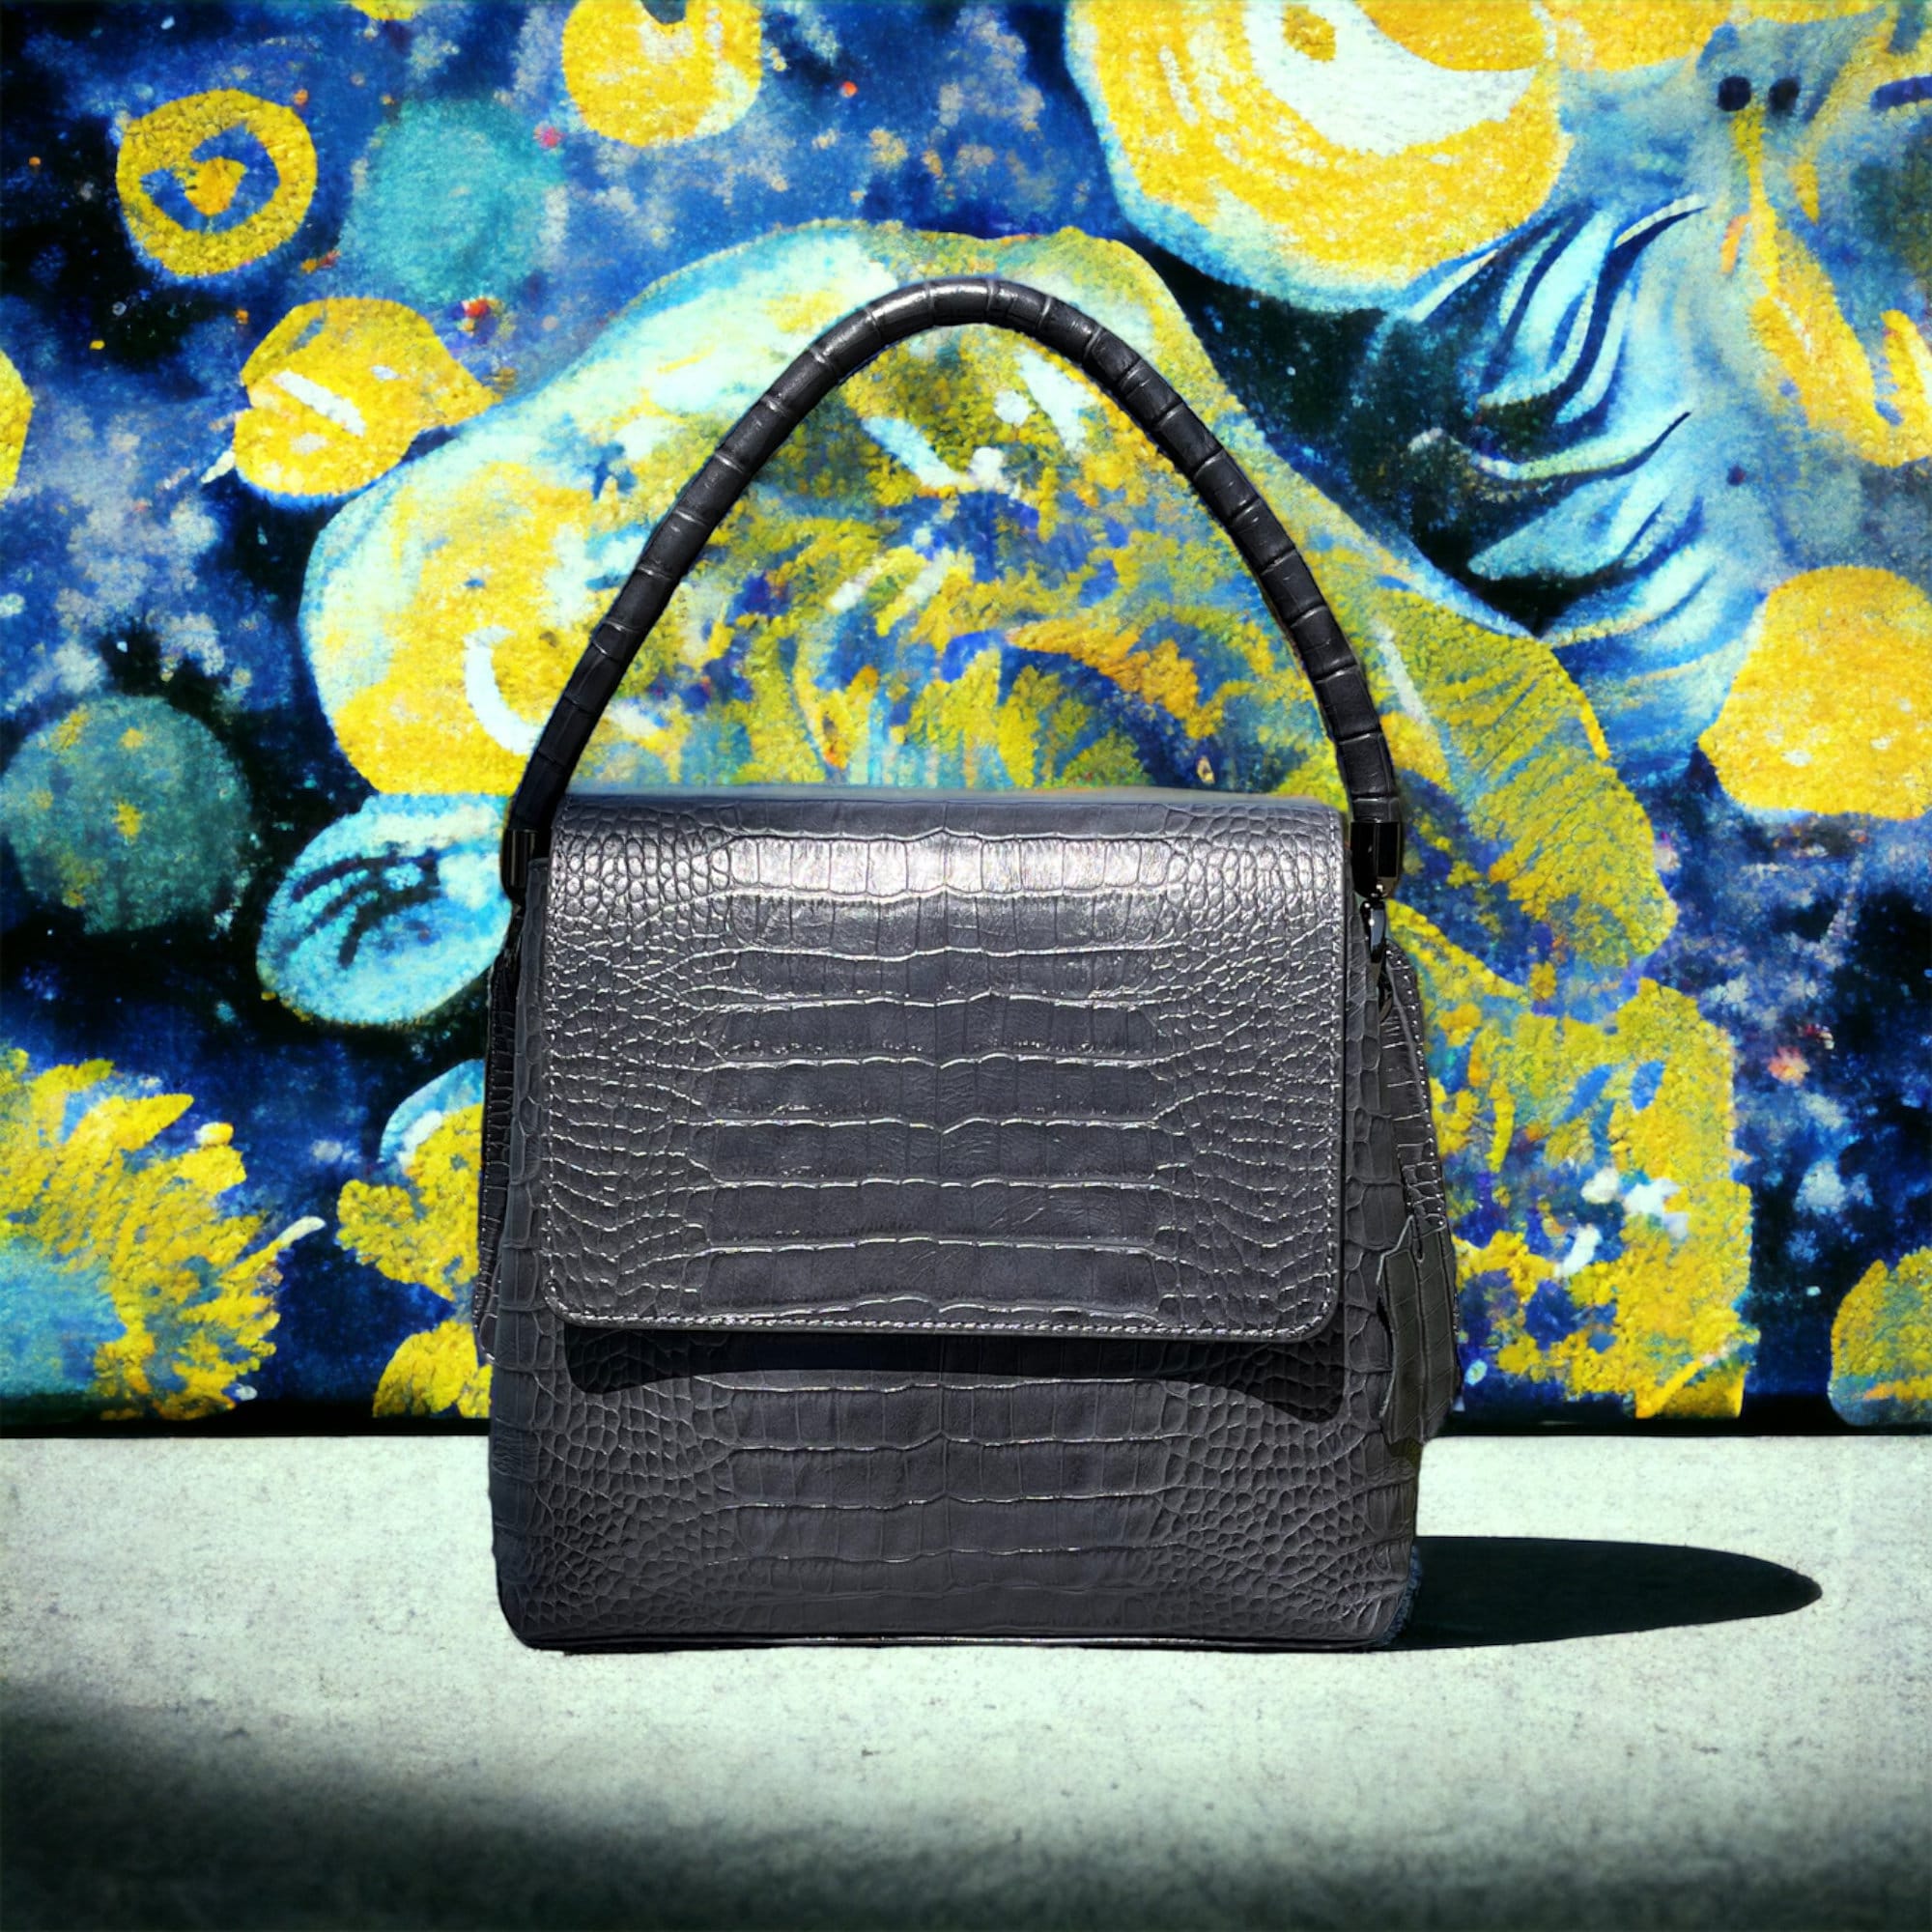 JAPAN SECOND-HAND LUXURY BAGS  BAZAAR IN YOKOHAMA #luxury bags